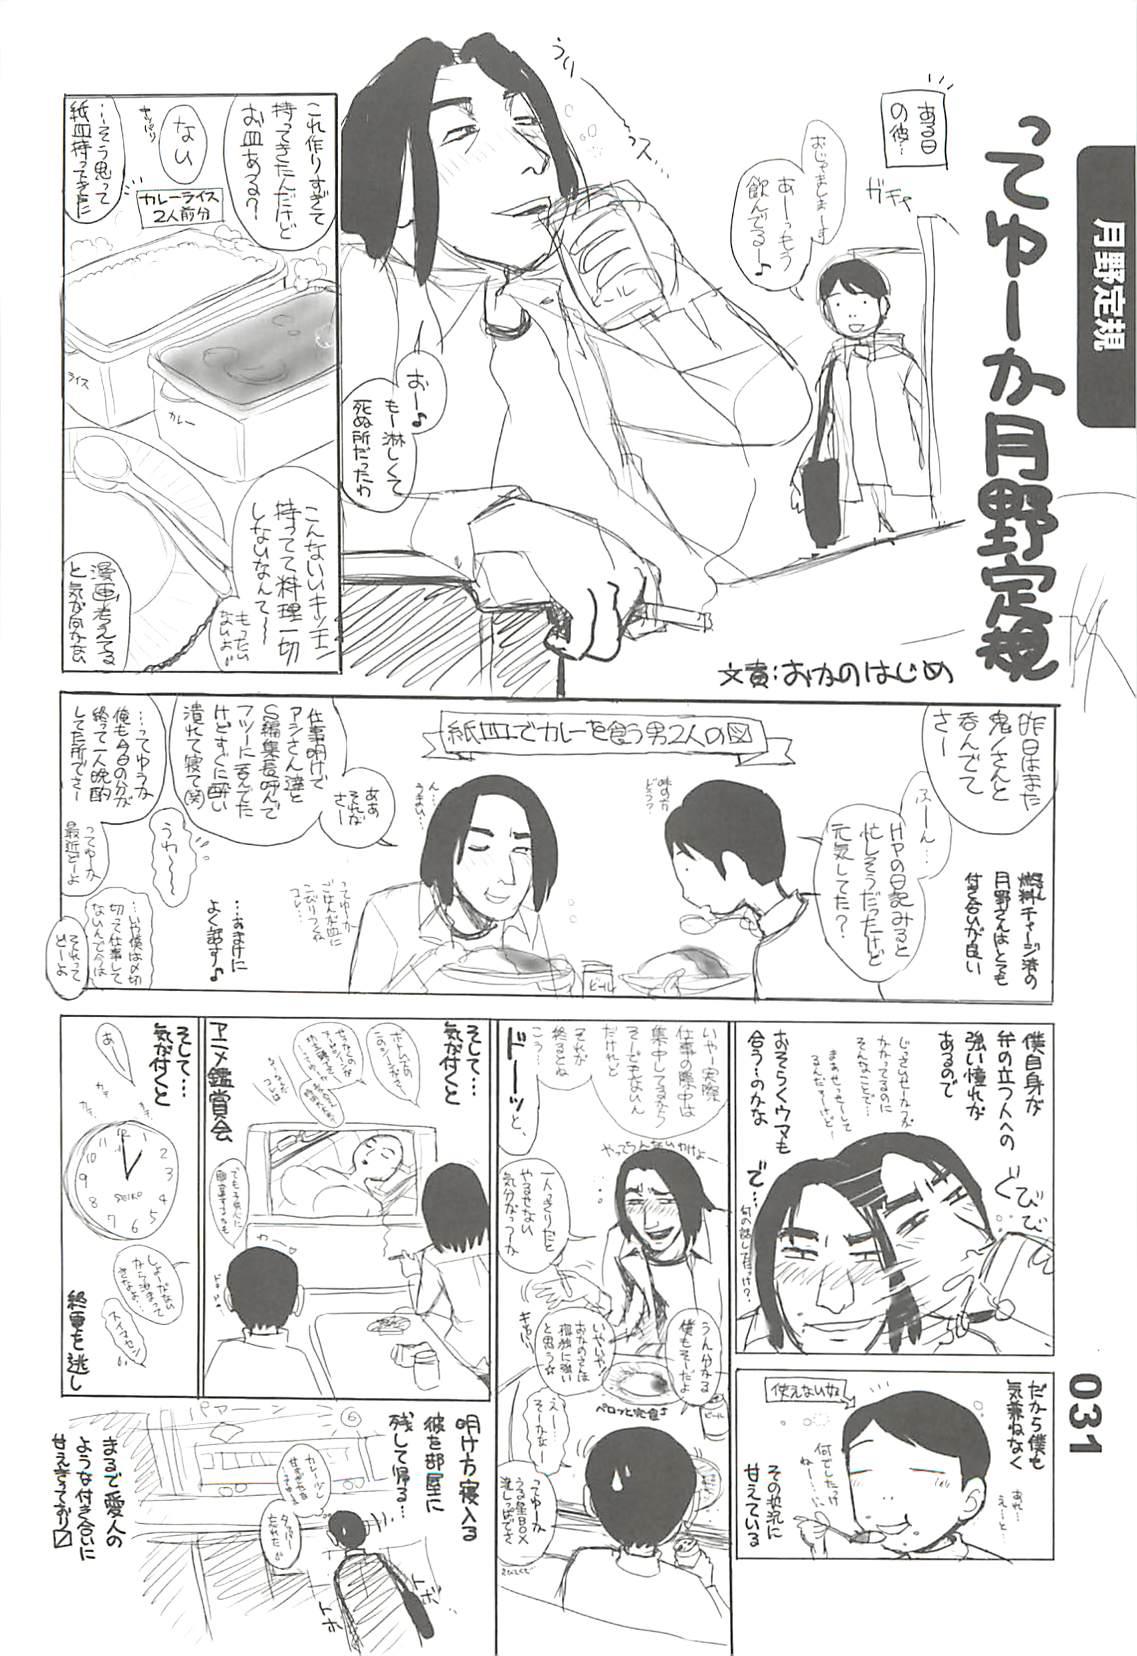 Ero-Manga no Genba Vol. 2 29